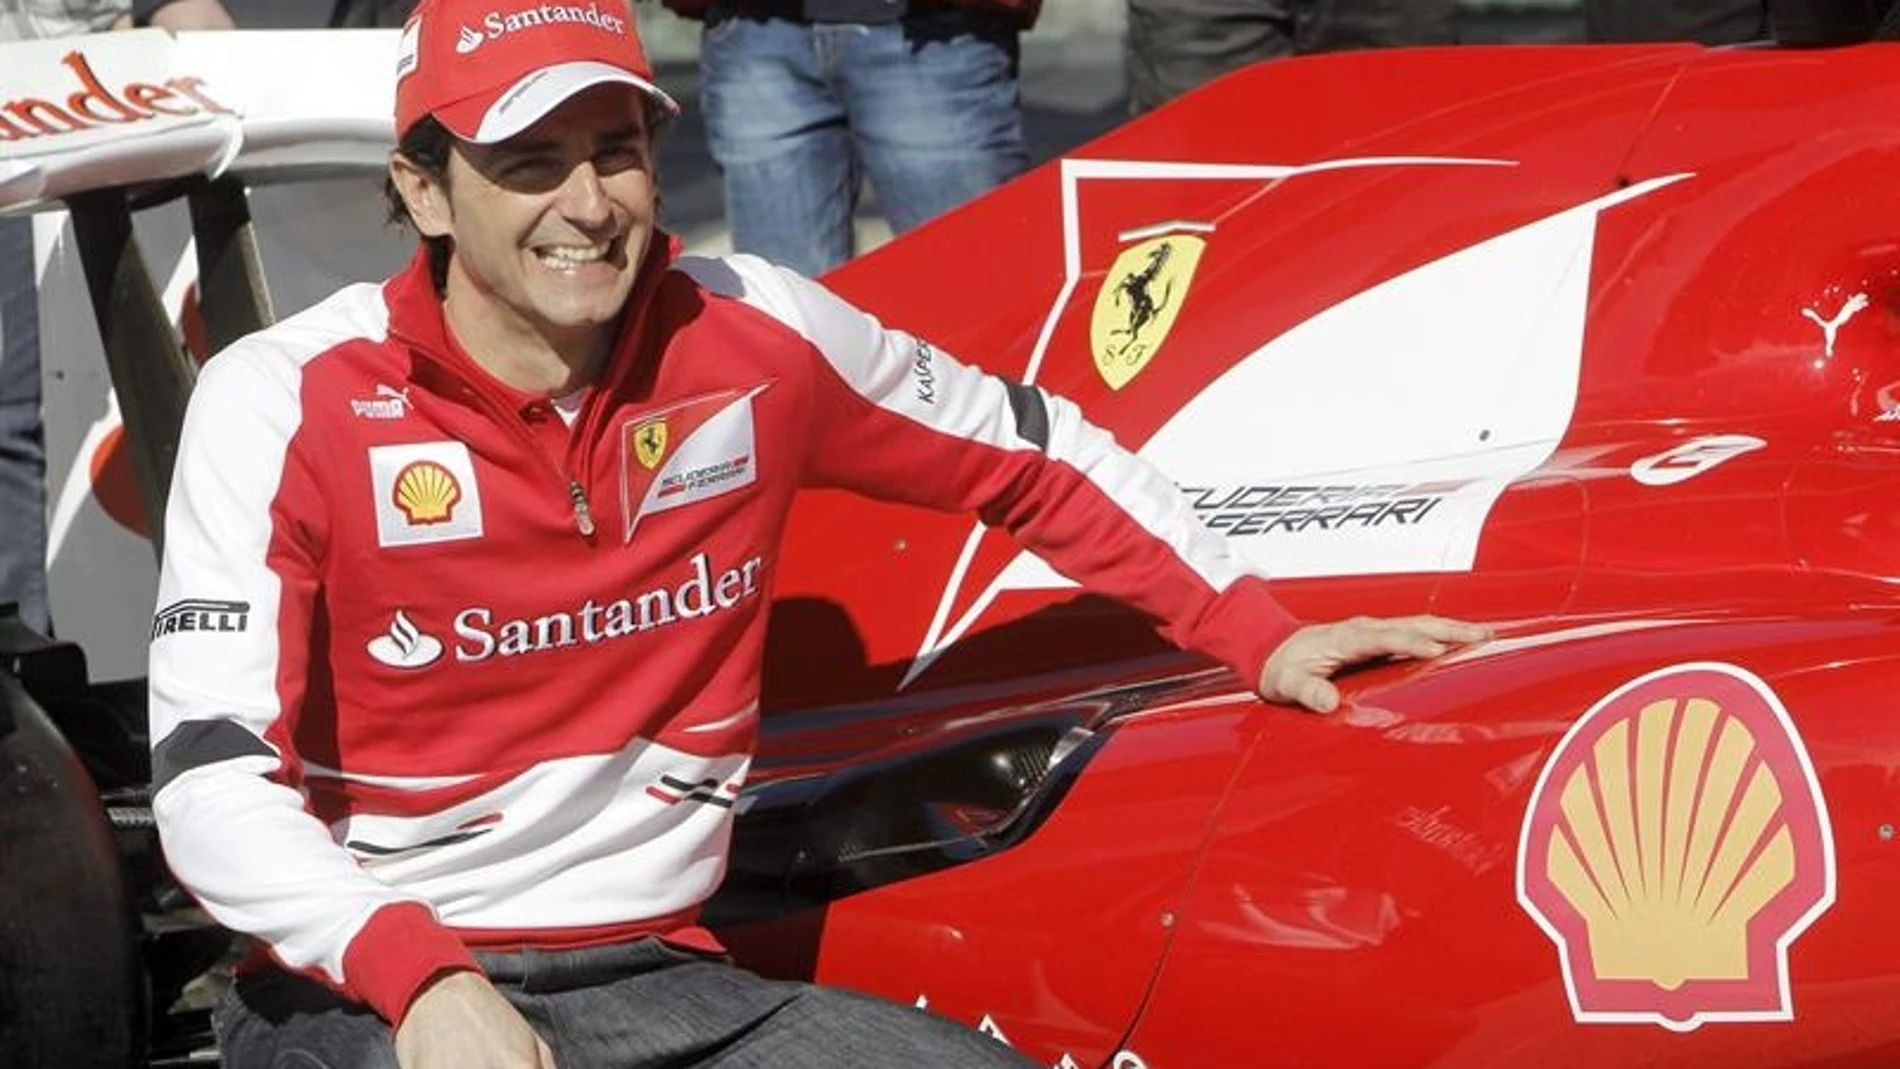 Pedro de la Rosa posa con el Ferrari